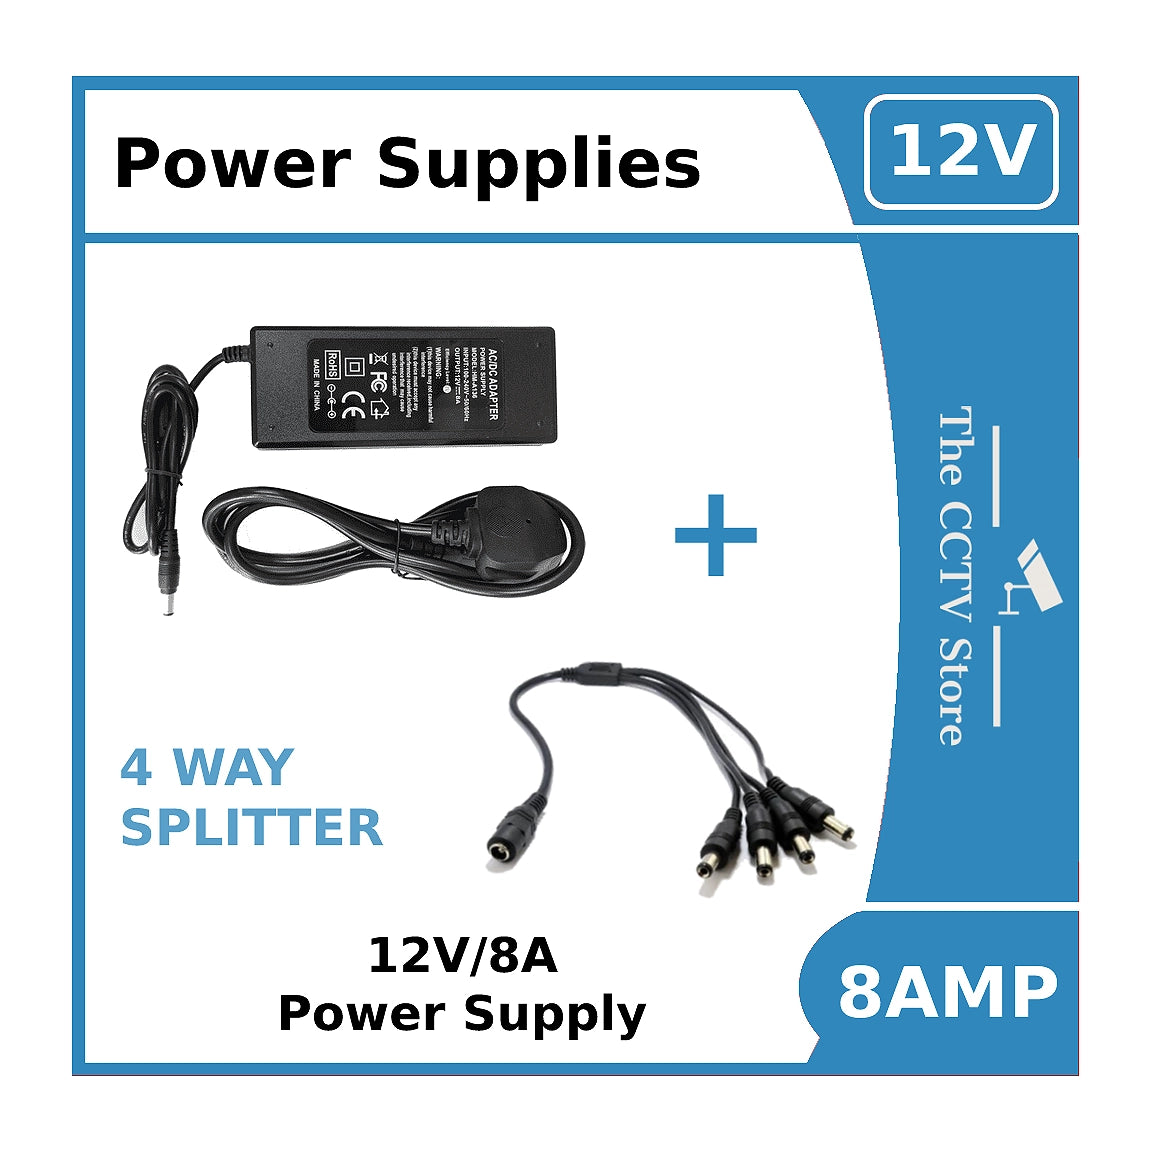 Power Supply 12V/8A for ColorVu CCTV Cameras -12vDC Power Supply 8amp